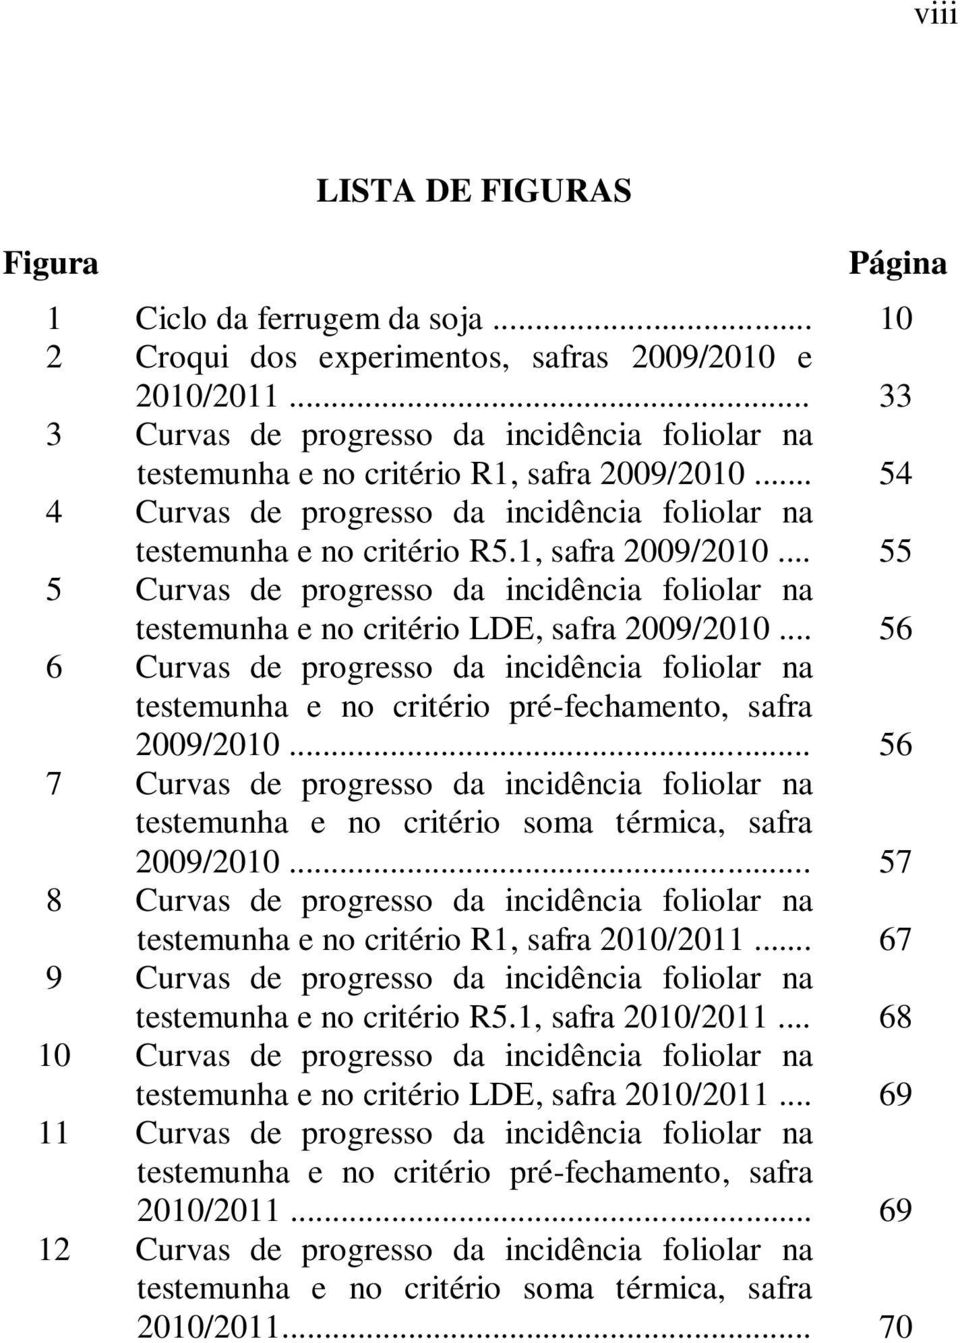 .. 56 6 Curvas de progresso da incidência foliolar na testemunha e no critério pré-fechamento, safra 2009/2010.